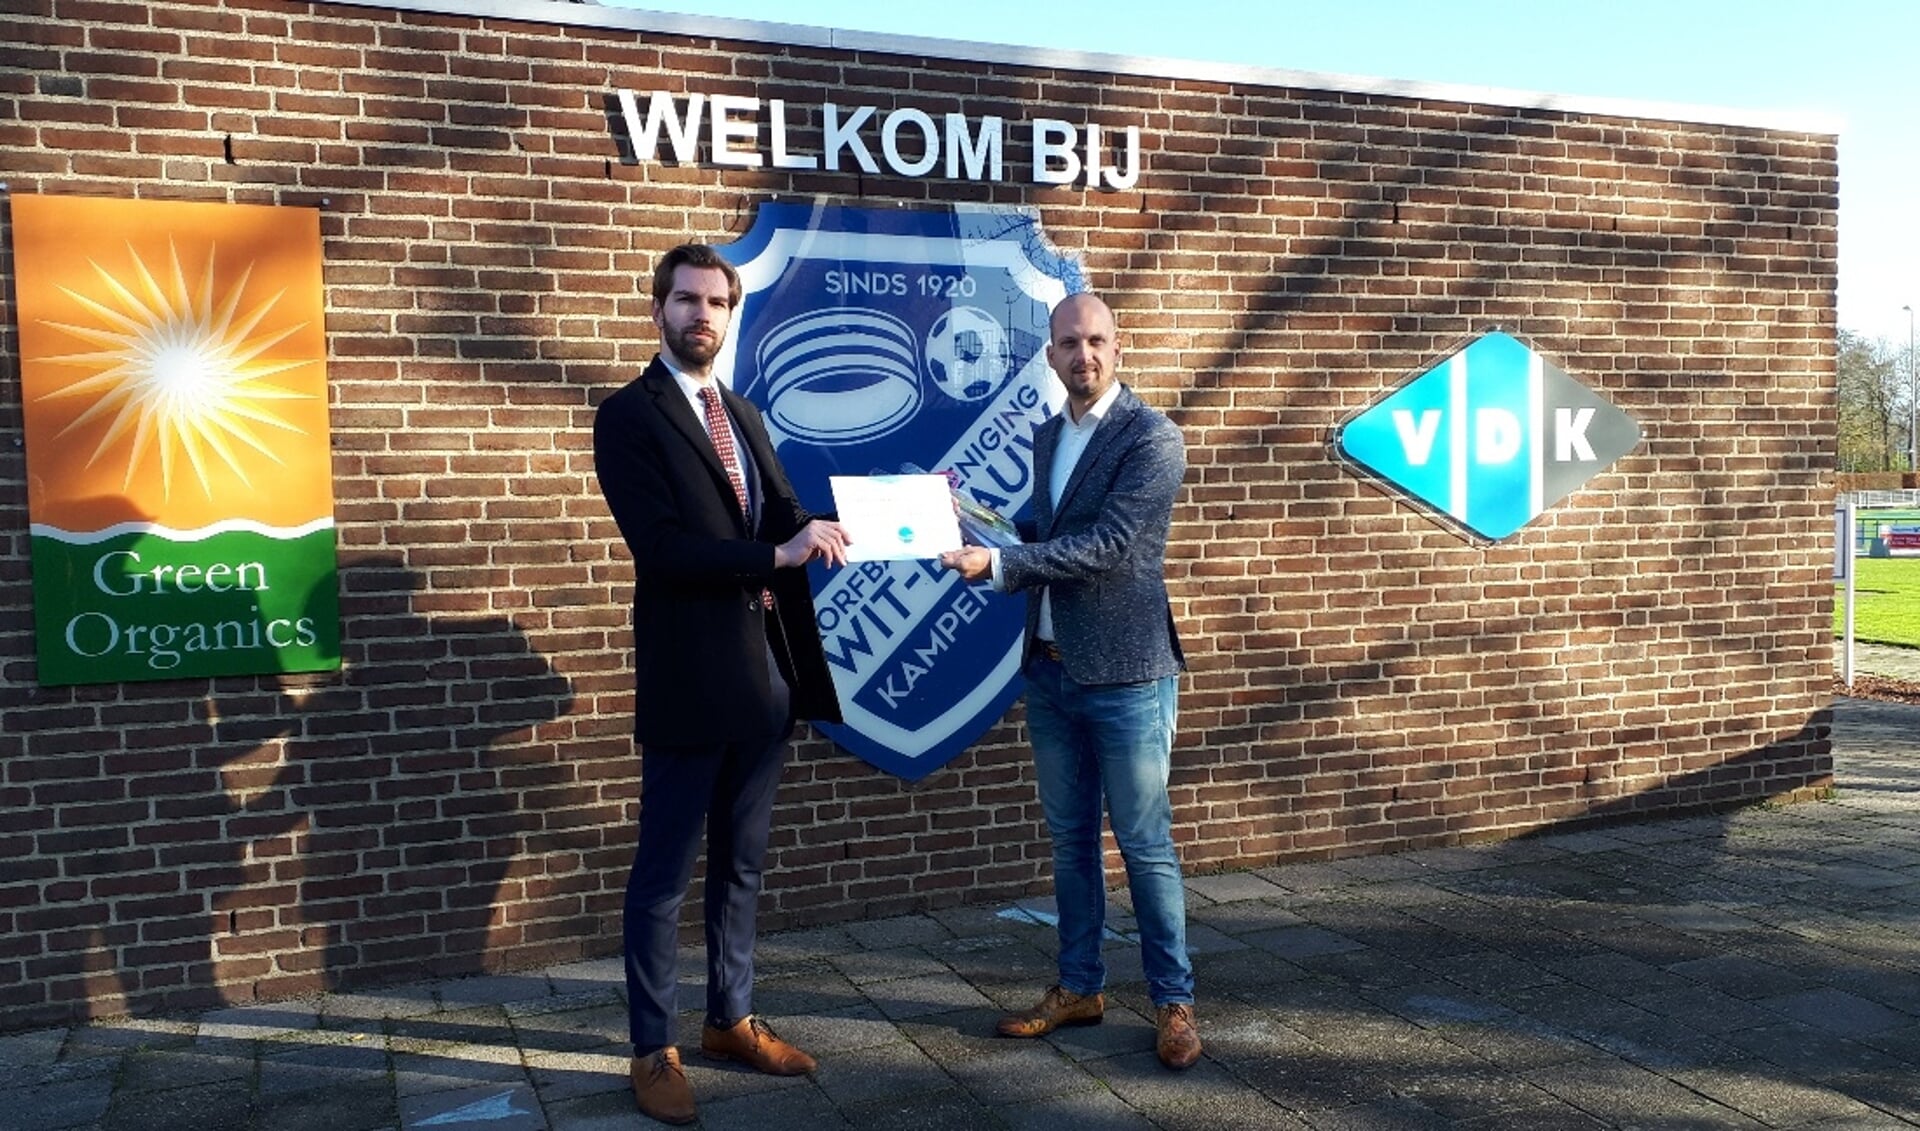 (links) Joeri Pool Statenlid Overijssel reikt de prijs uit aan (rechts) Marwin van den Burg van korfbalvereniging Wit-Blauw/Green Organics